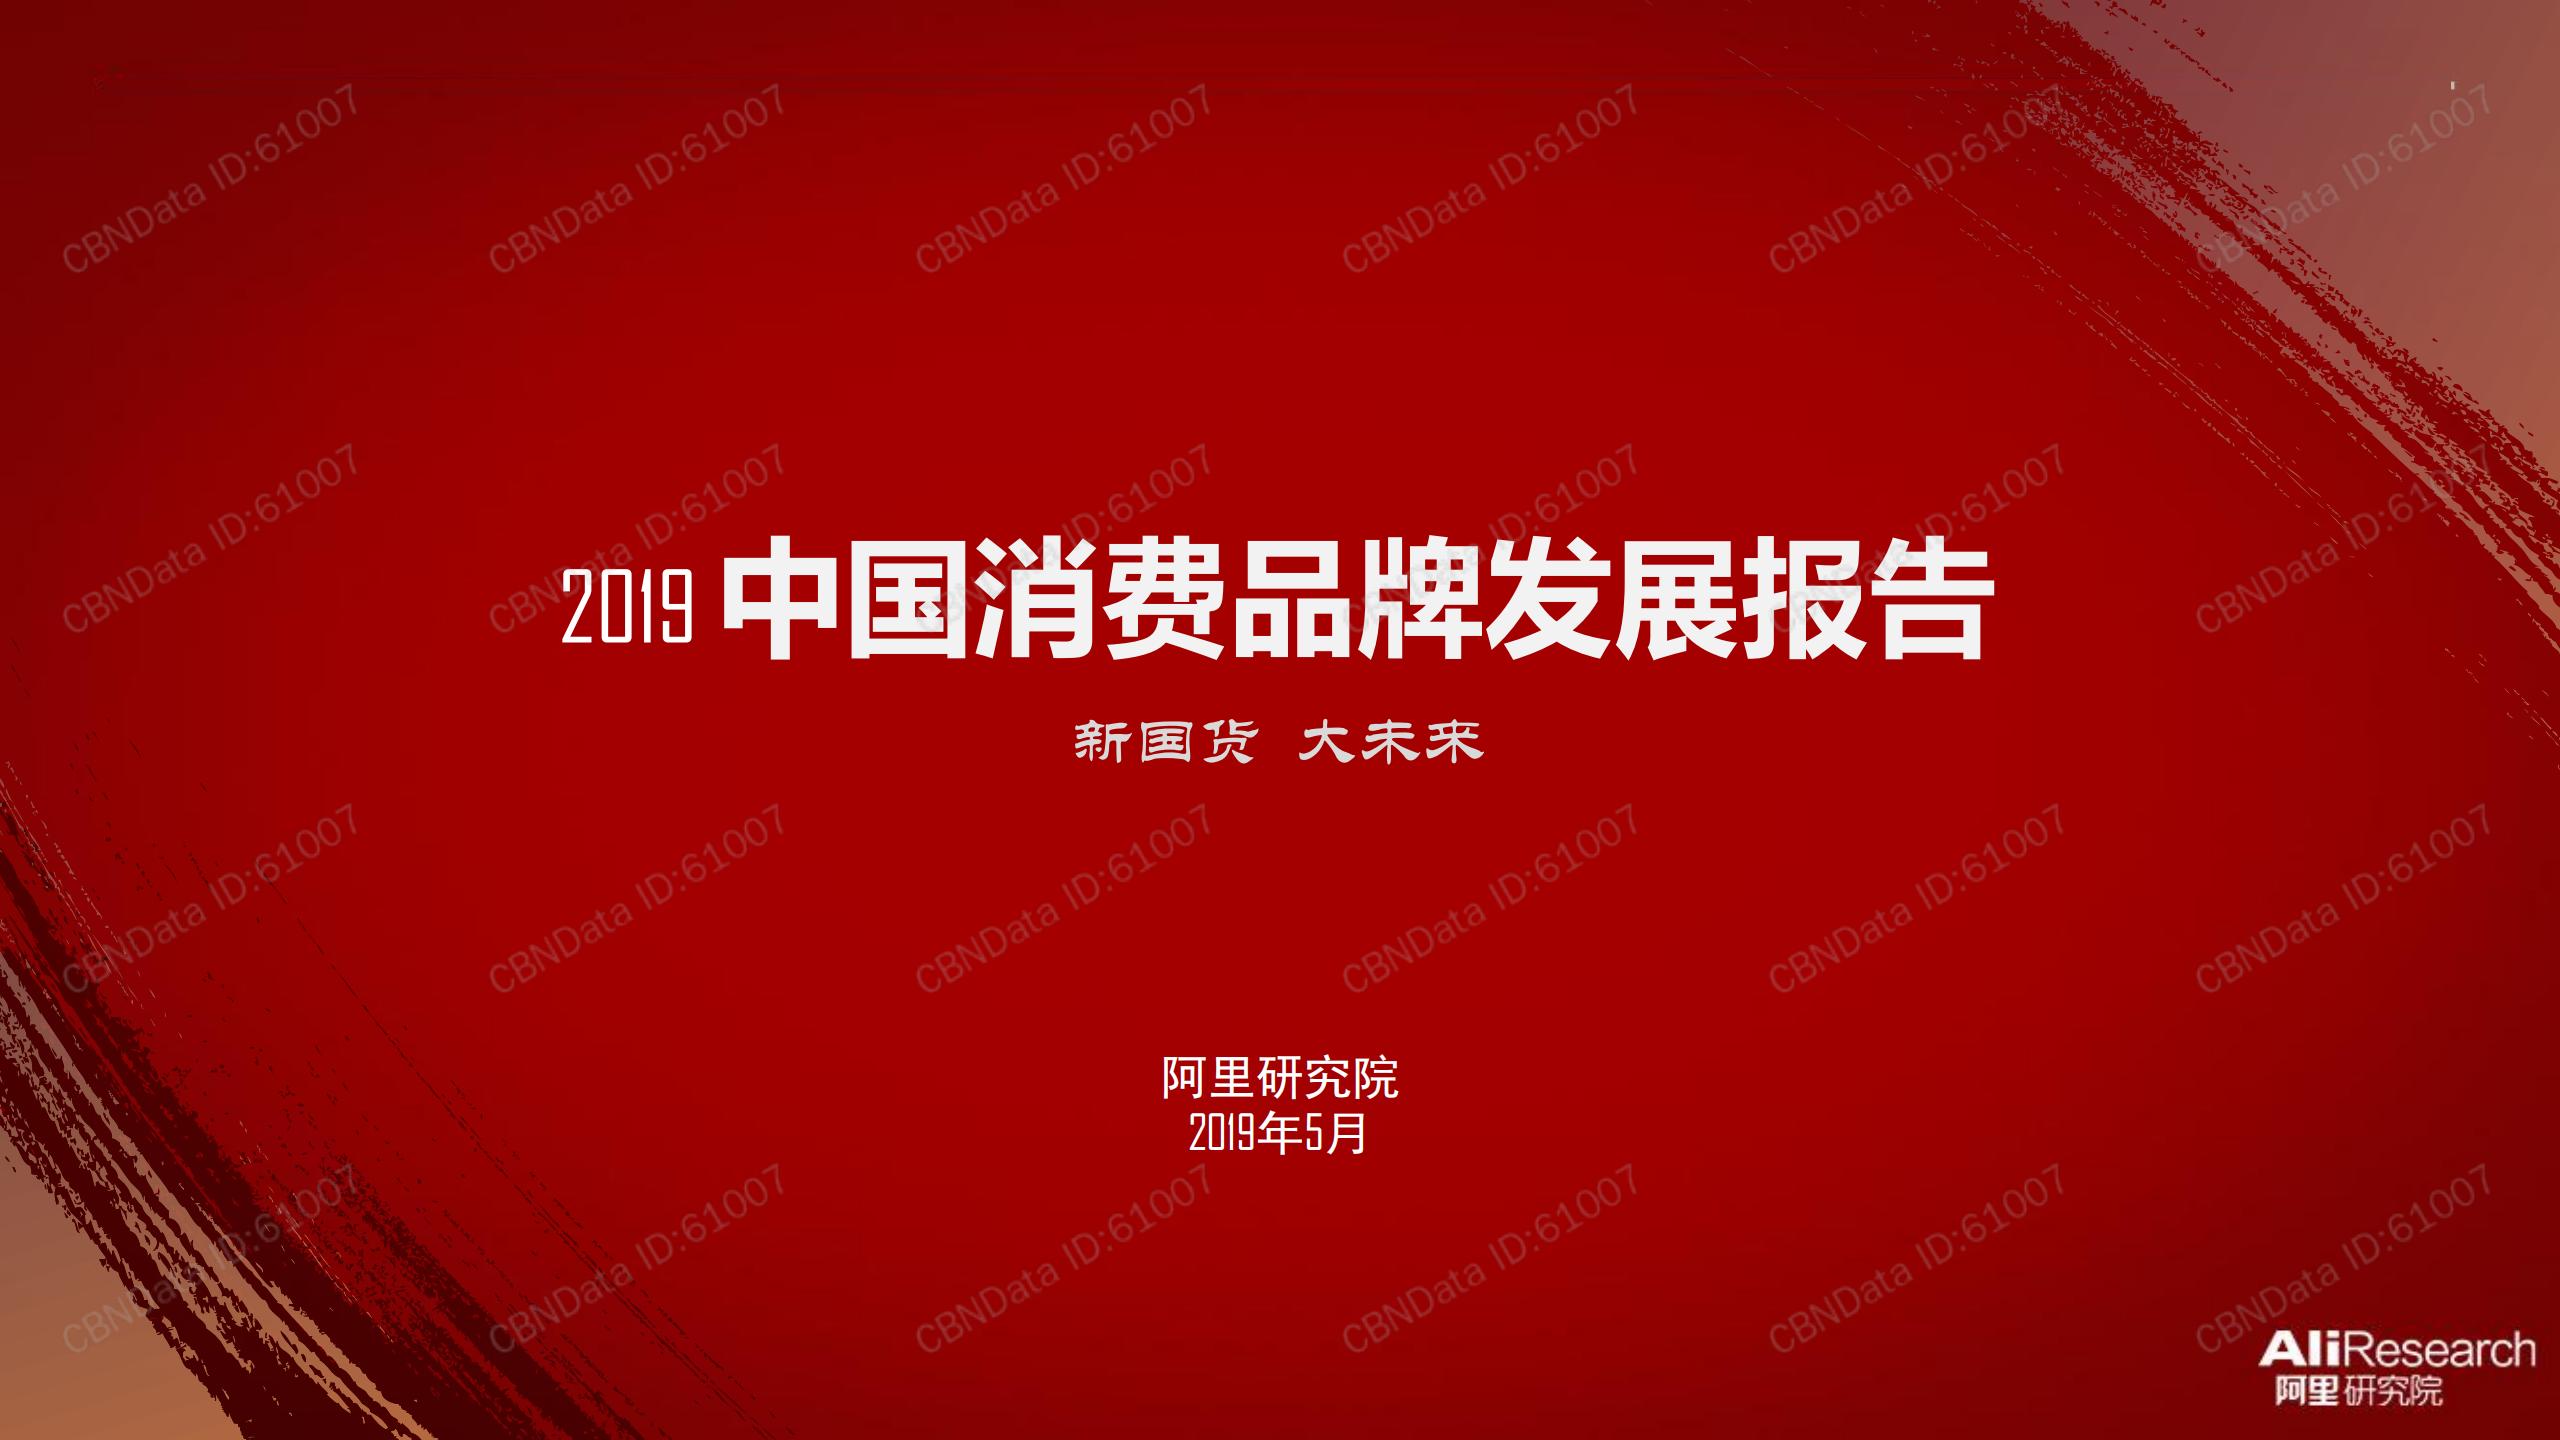 2019 中国消费品牌发展报告 (1)_00.jpg